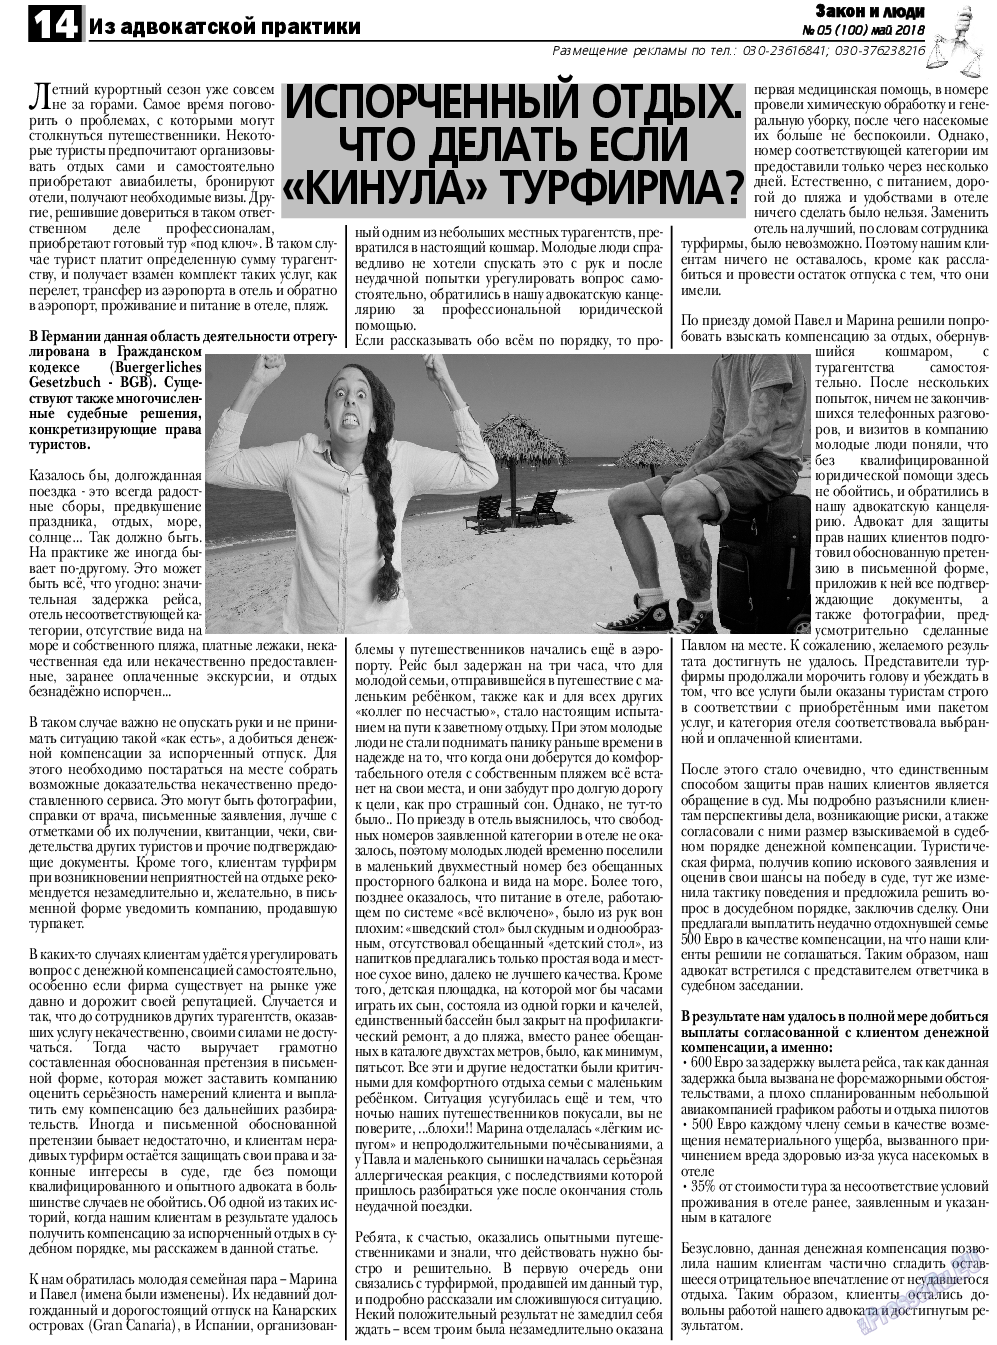 Закон и люди, газета. 2018 №5 стр.14